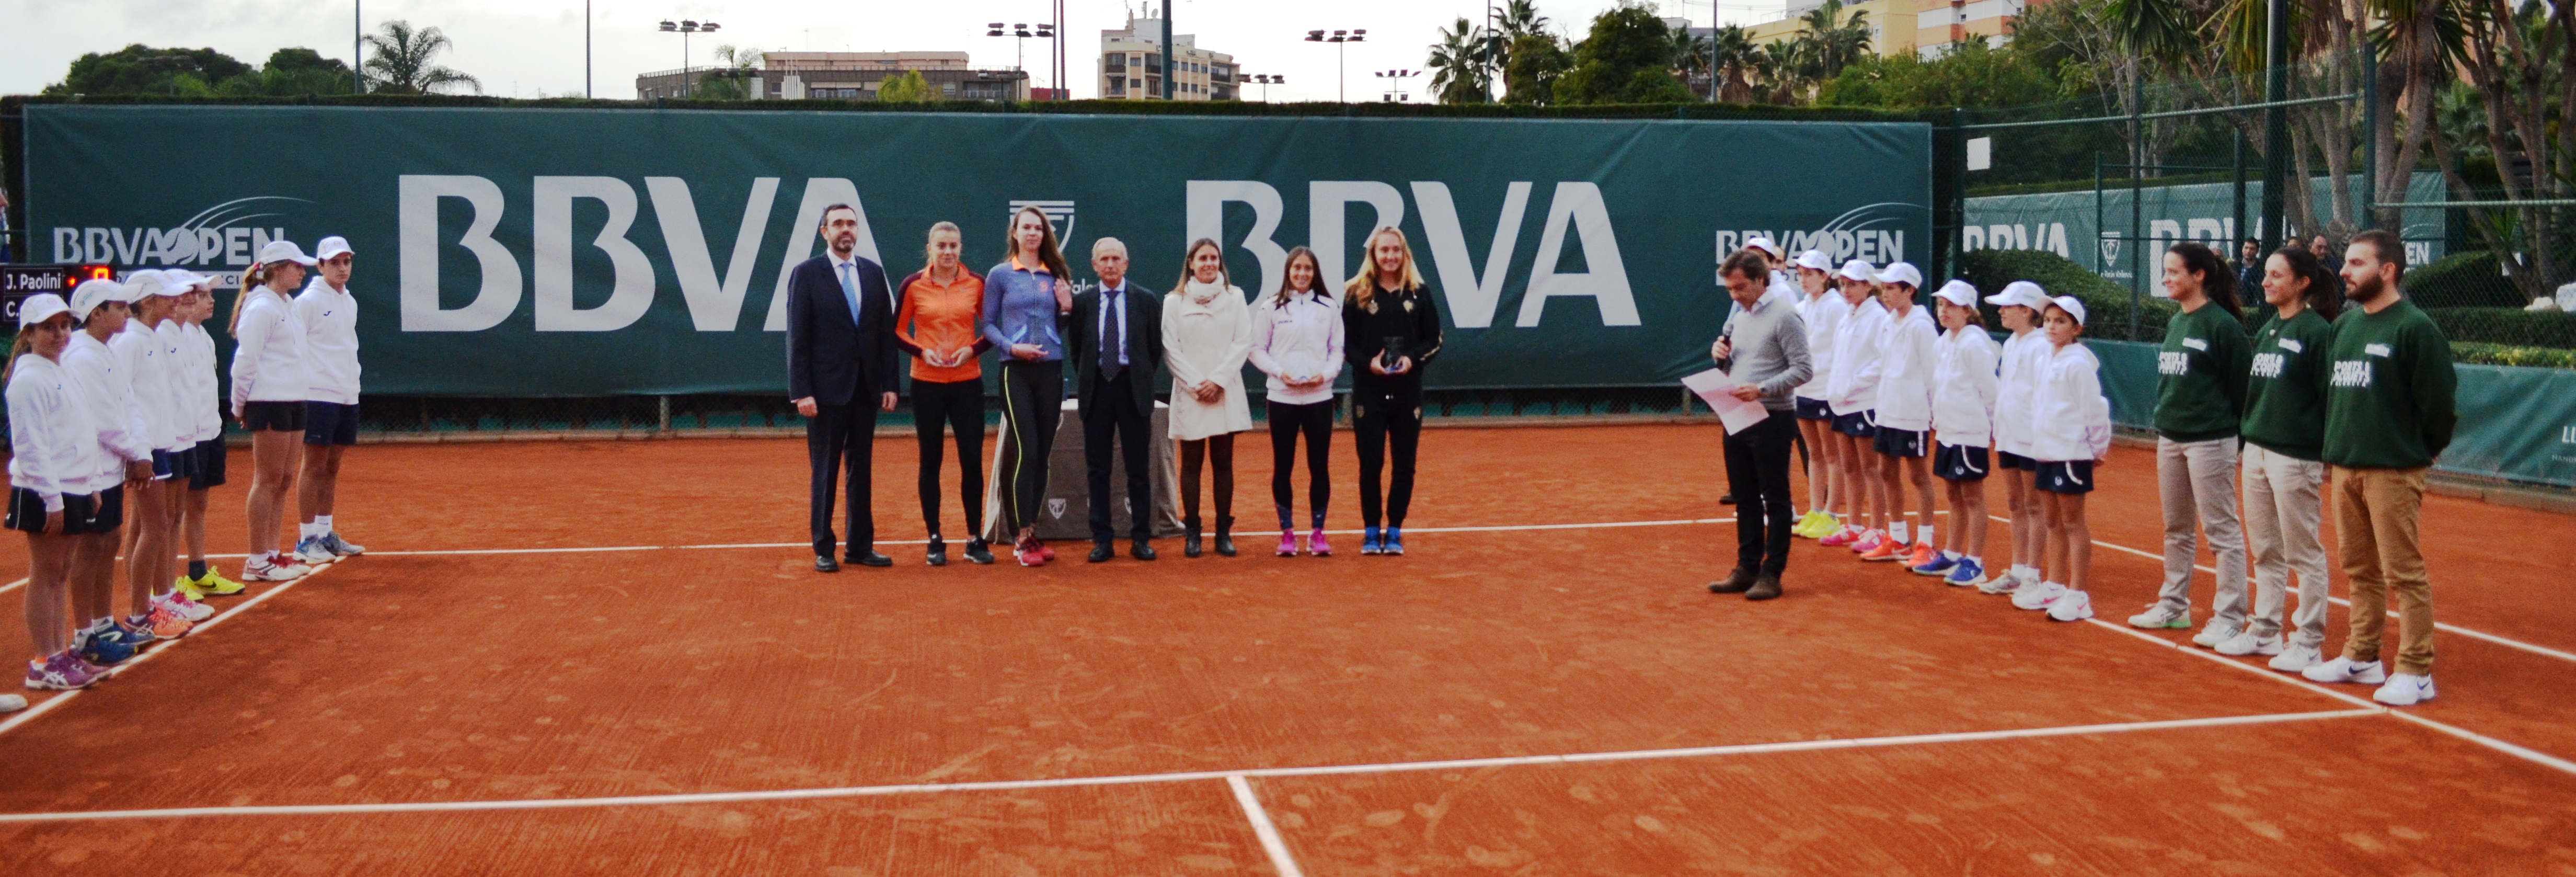 Gjorcheska y Galina Voskoboeva campeonas dobles BBVA Open Ciudad de Valencia